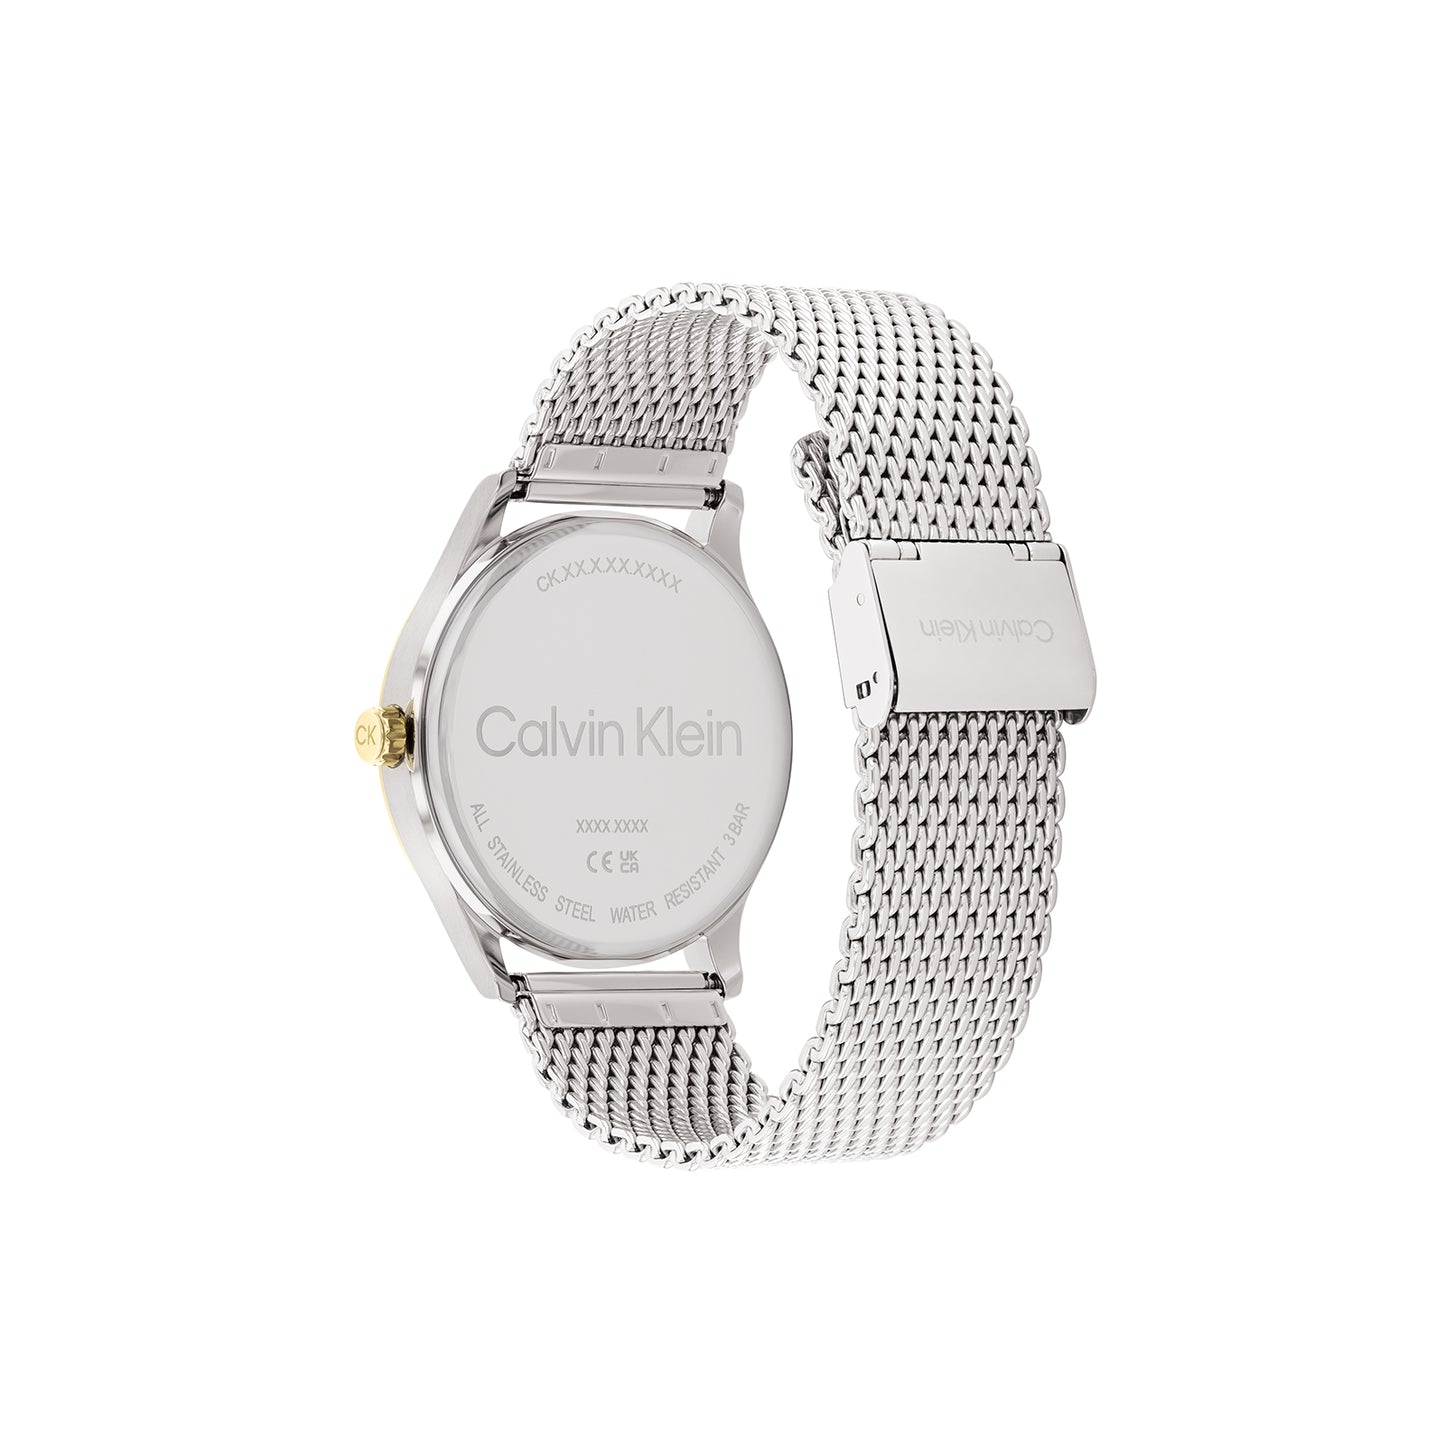 Calvin Klein 25200452 Men's Steel Mesh Watch